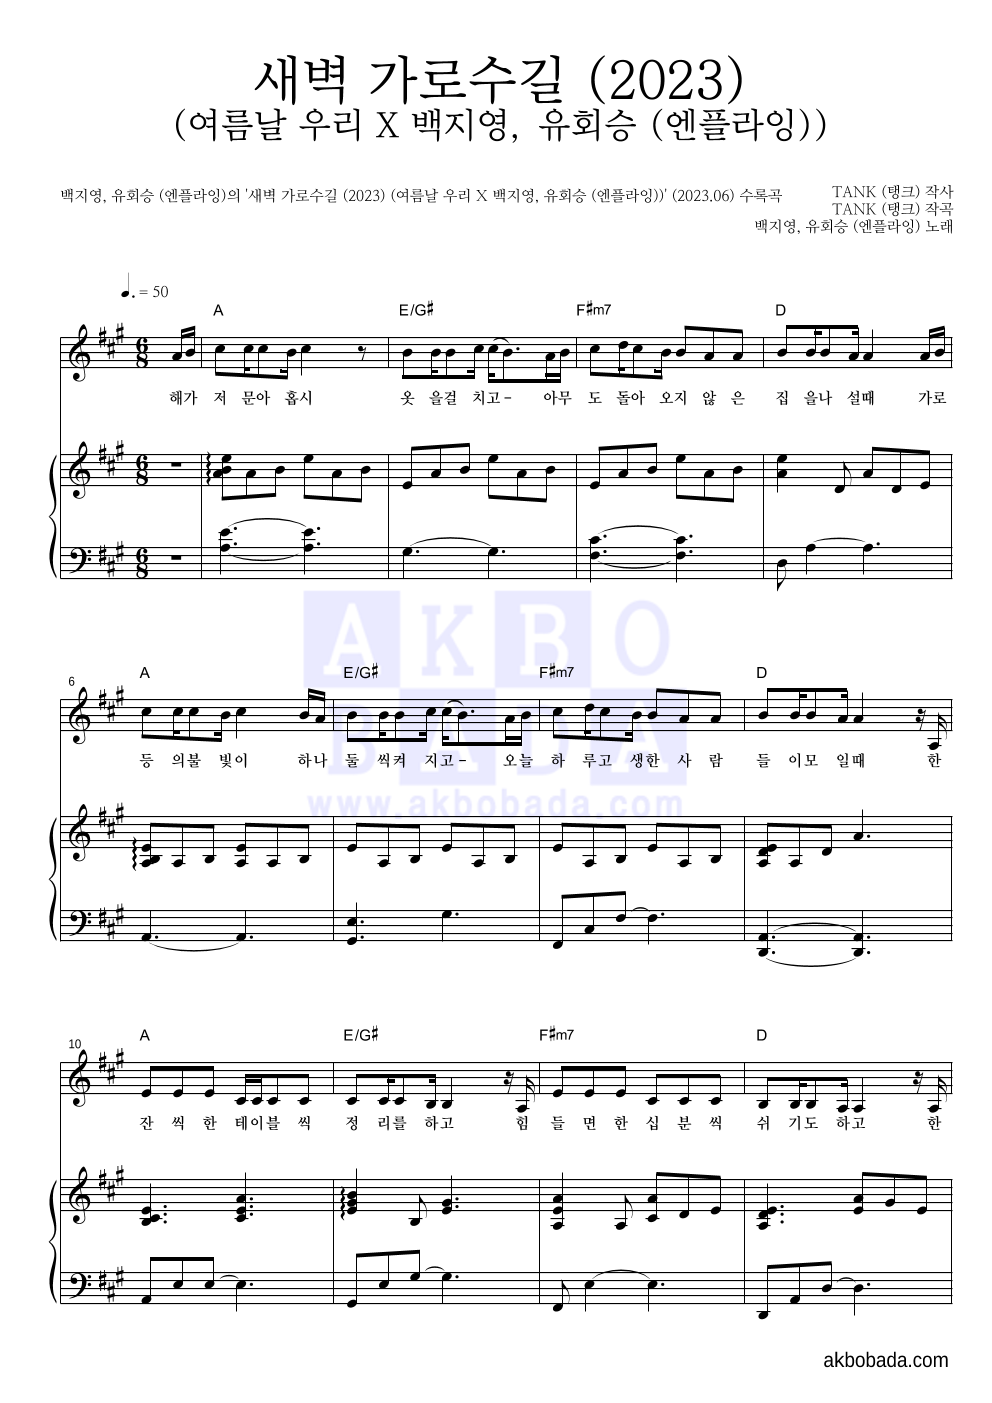 백지영 - 새벽 가로수길 (2023) (여름날 우리 X 백지영, 유회승 (엔플라잉)) 피아노 3단 악보 